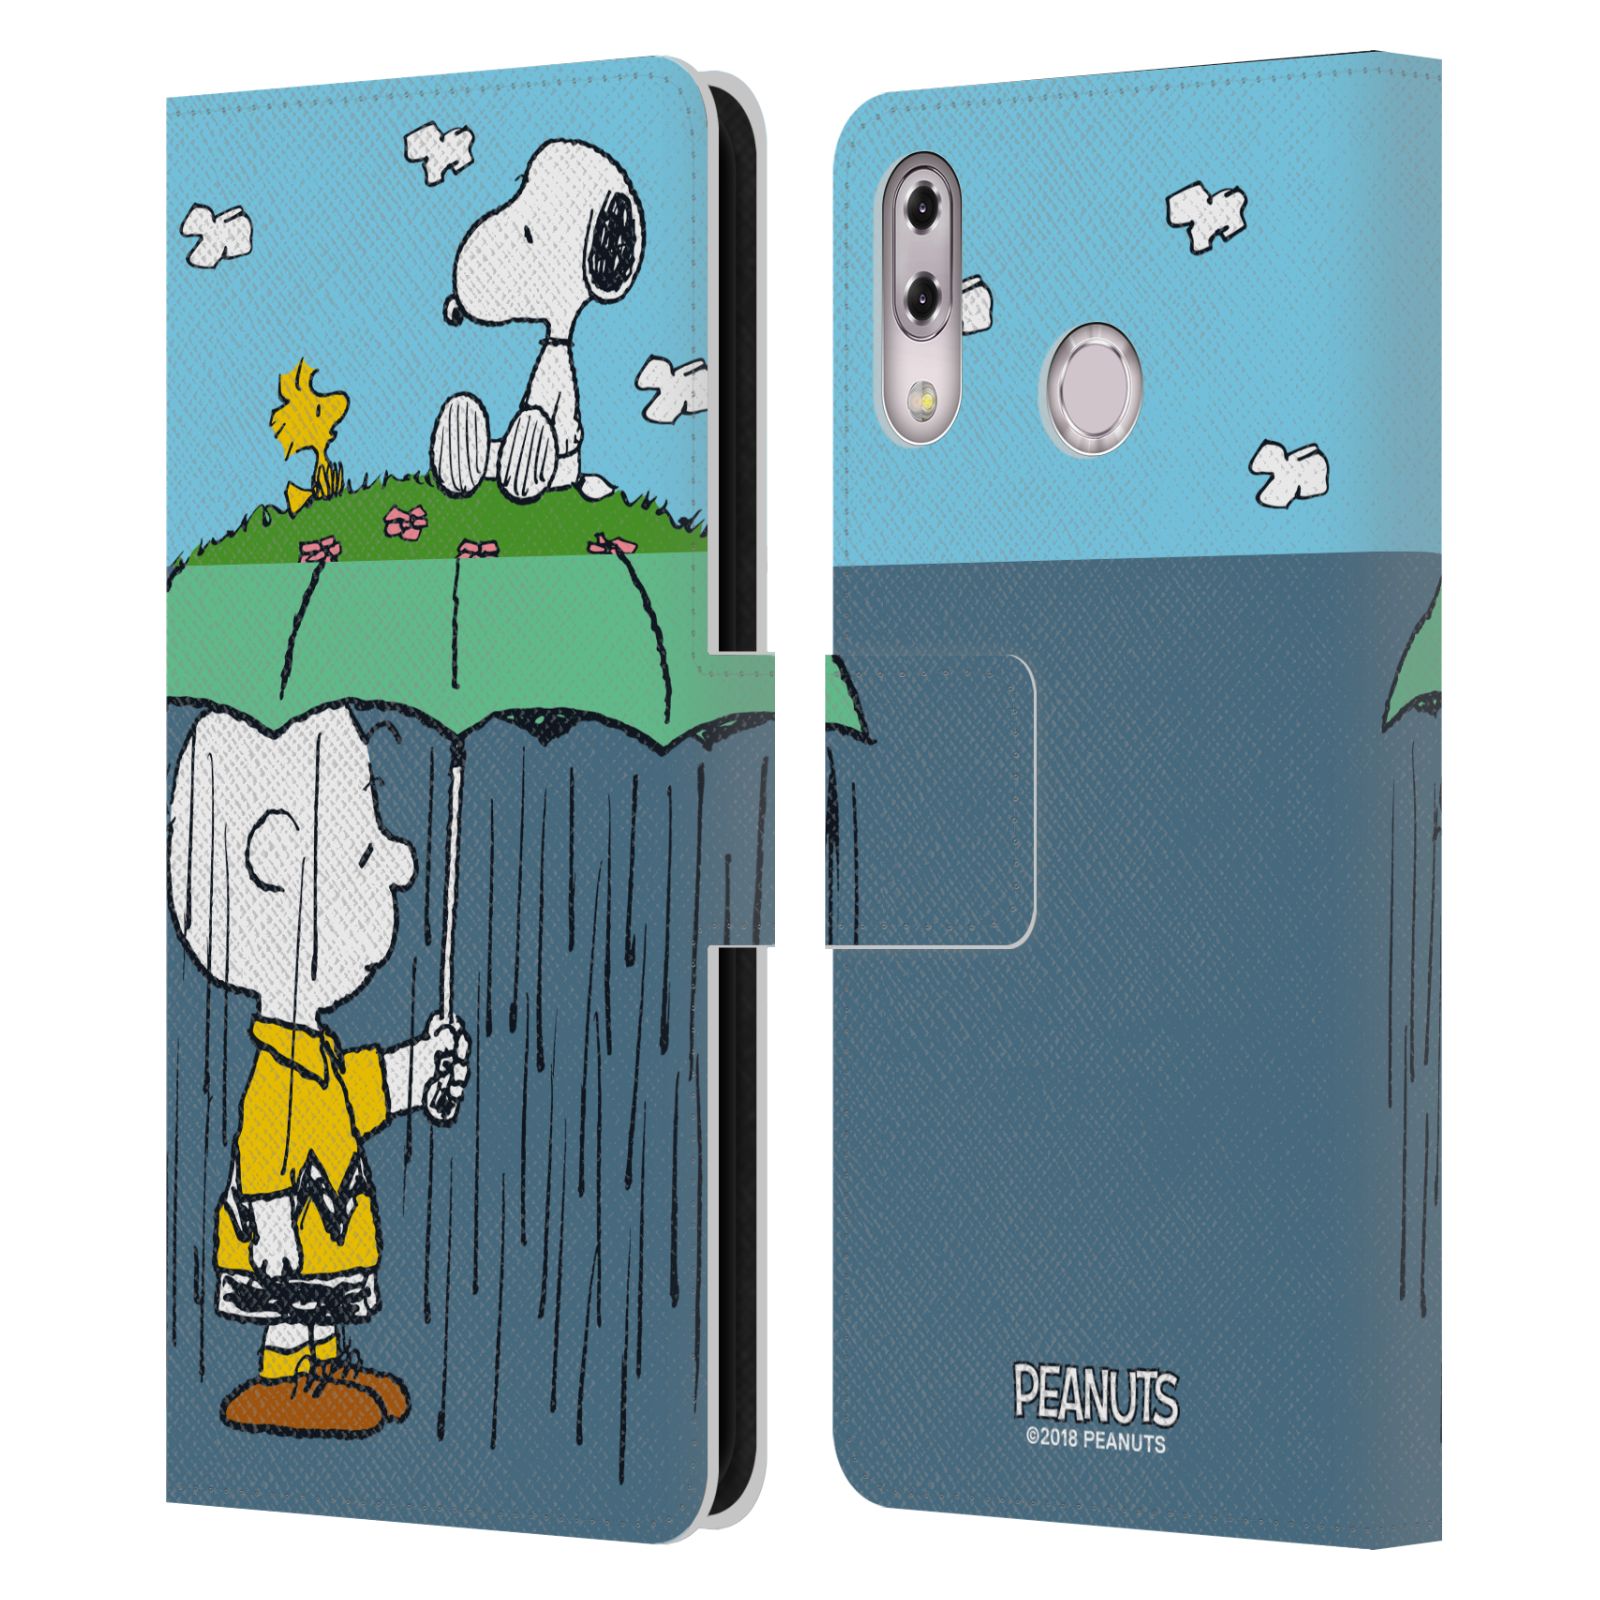 Pouzdro na mobil Asus Zenfone 5z ZS620KL / 5 ZE620KL - Head Case - Peanuts - Snoopy, Charlie a ptáček Woodstock